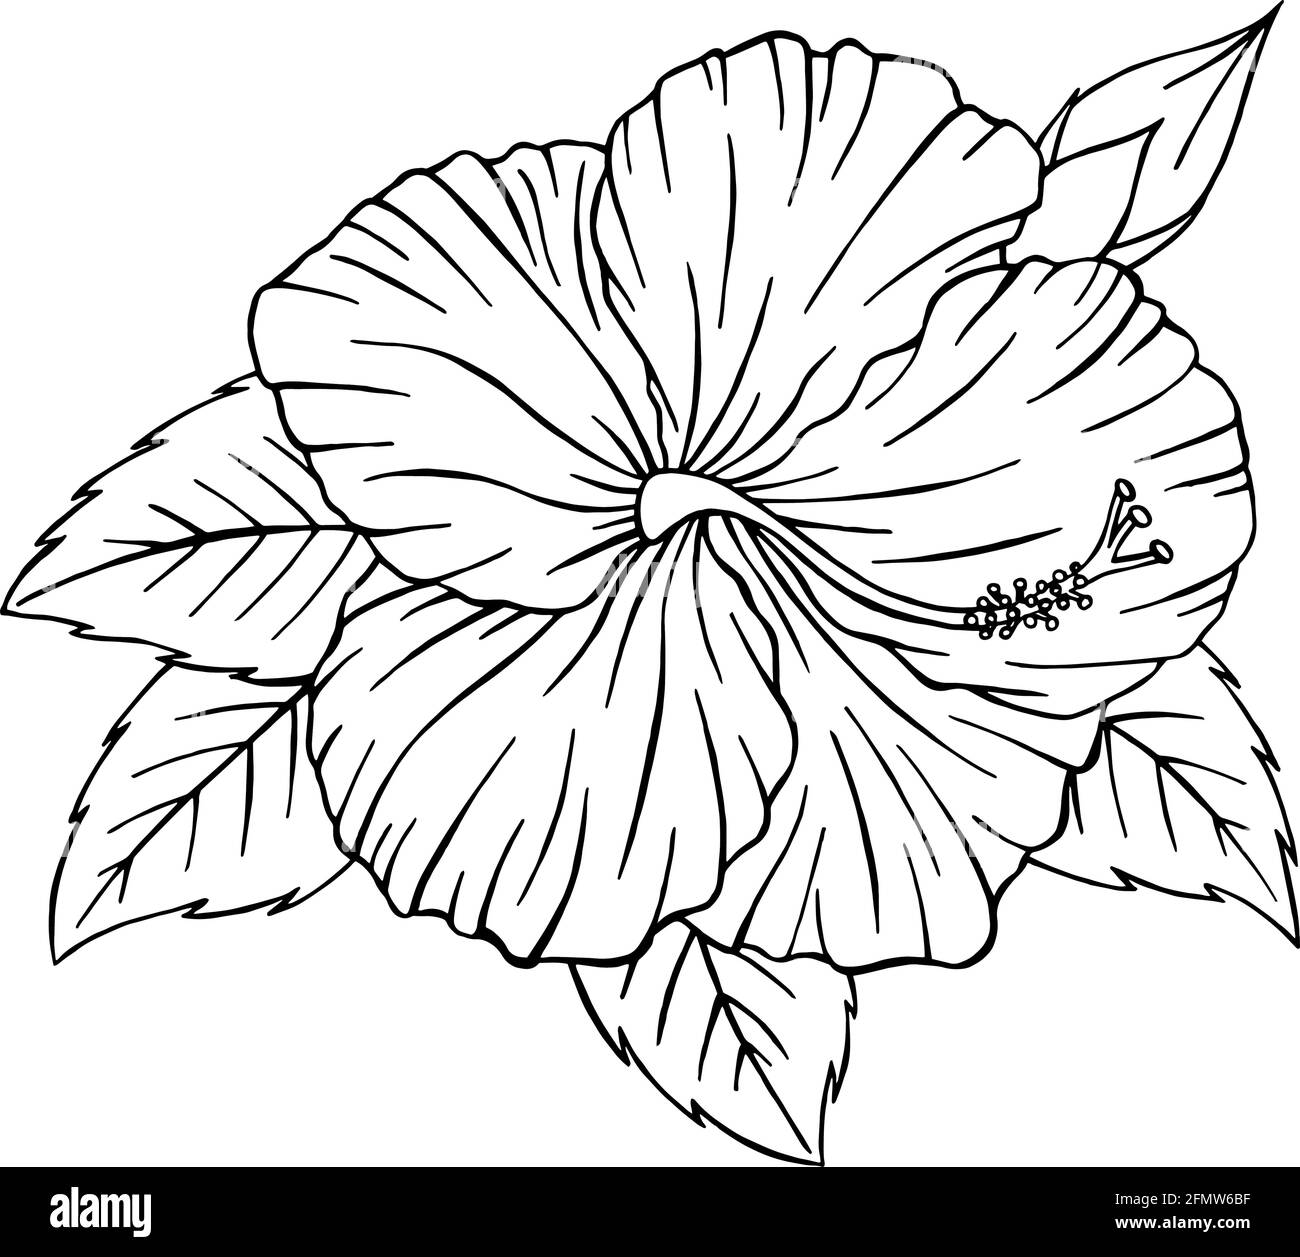 Contour de fleur d'hibiscus dessiné à la main. Illustration vectorielle Hibiscus line art isolée sur fond blanc. Silhouette de fleur tropicale en forme de coolé Illustration de Vecteur